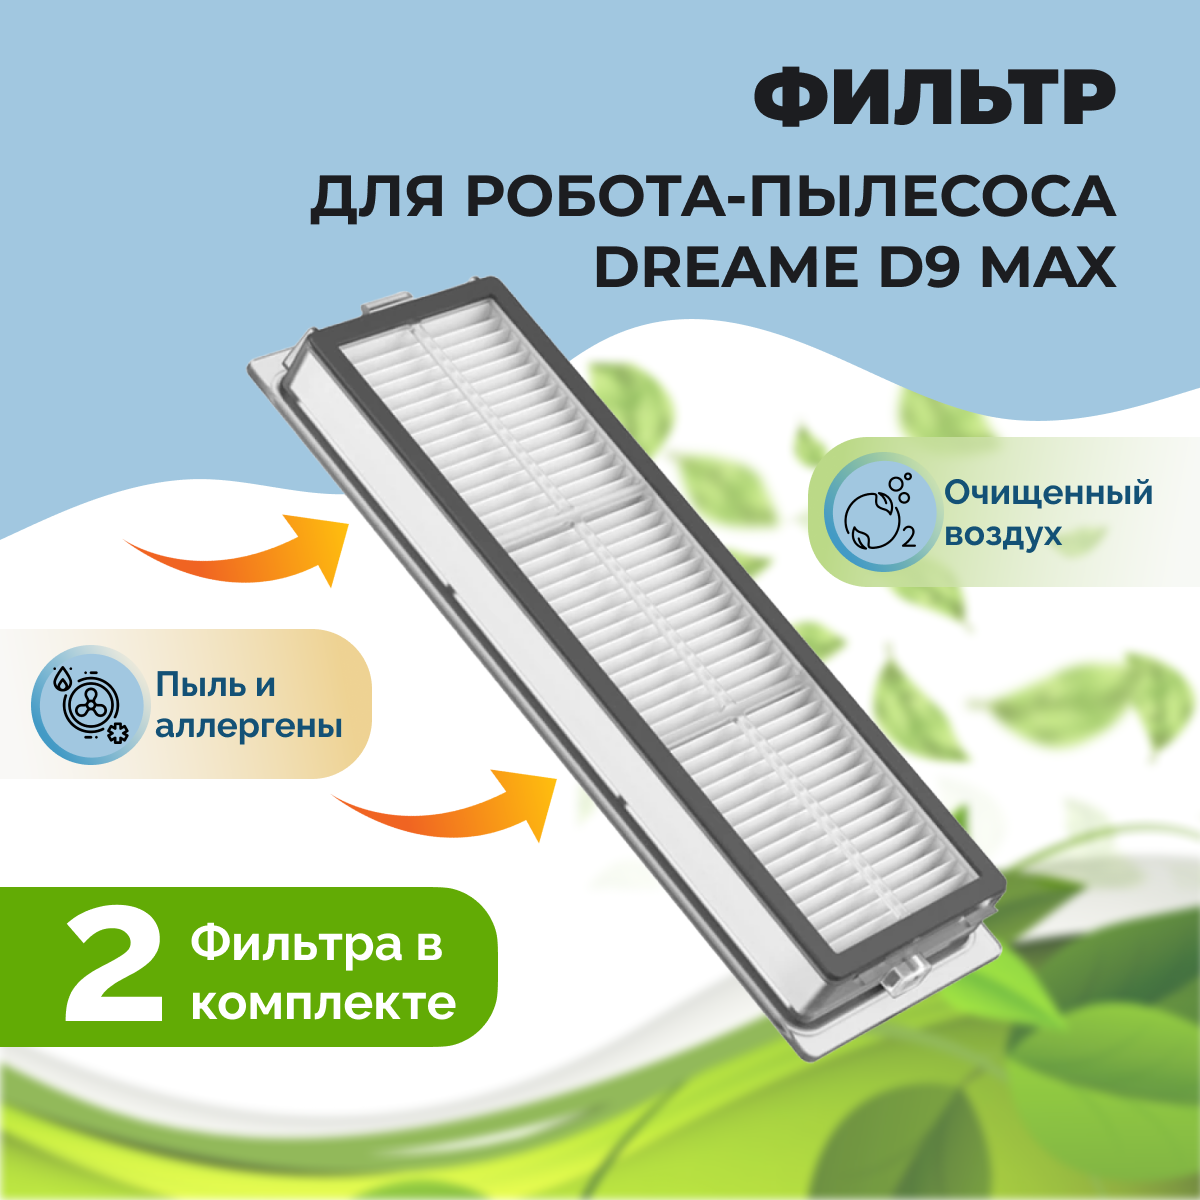 Фильтры для робота-пылесоса Dreame D9 Max, 2 штуки 558103